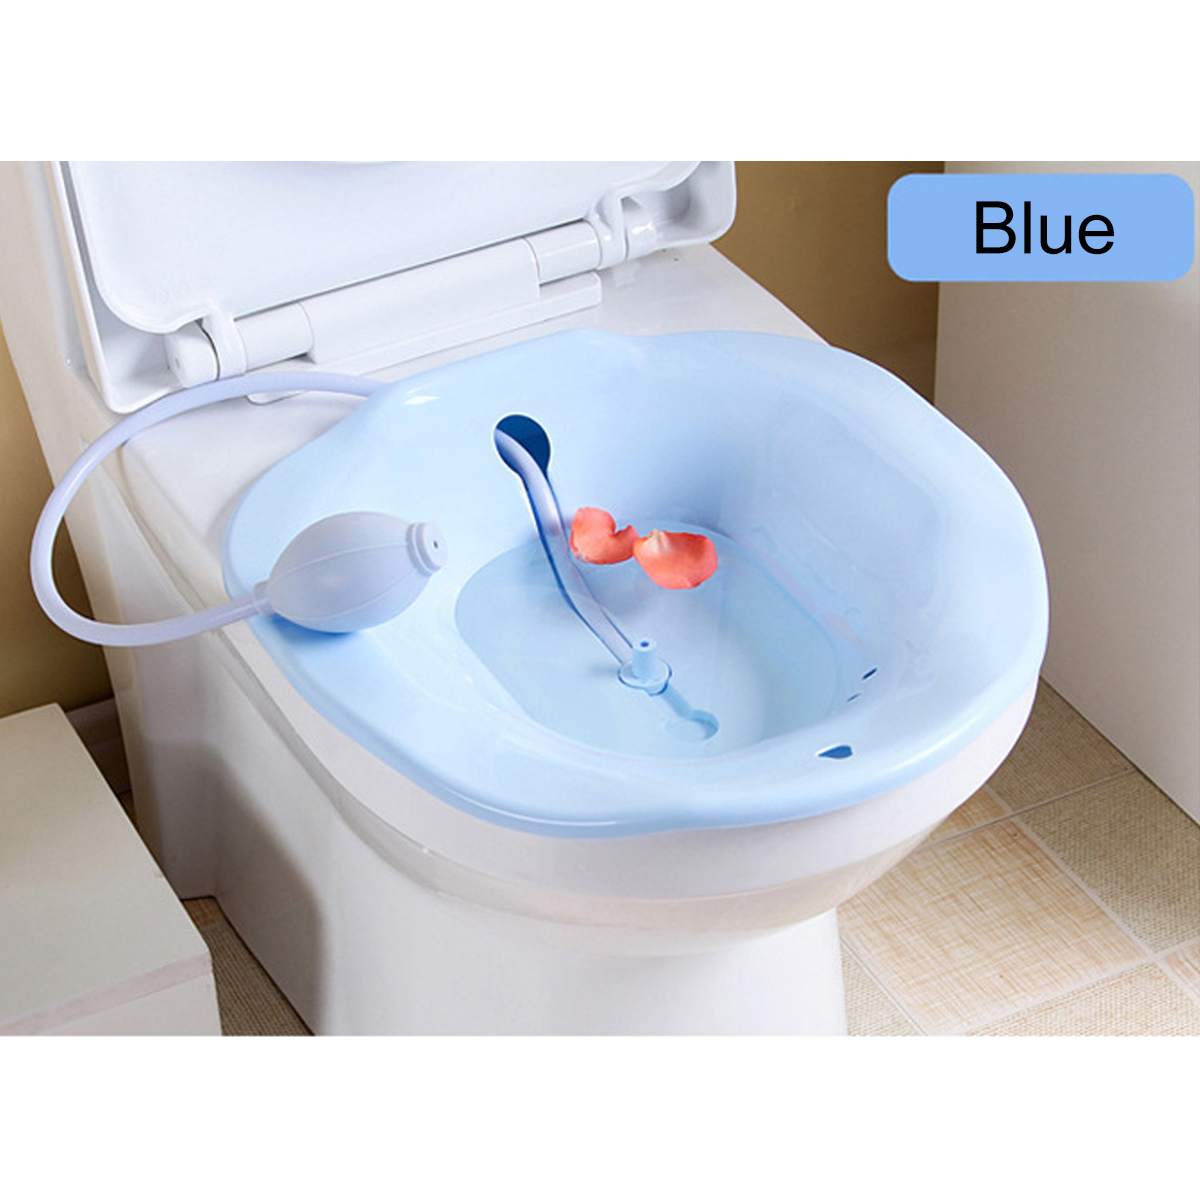 Bærbar 2.5l bidet sitz badekar babysygeplejeboks kit postpartum hæmorroide vaskesprøjte på toilet: Himmelblå